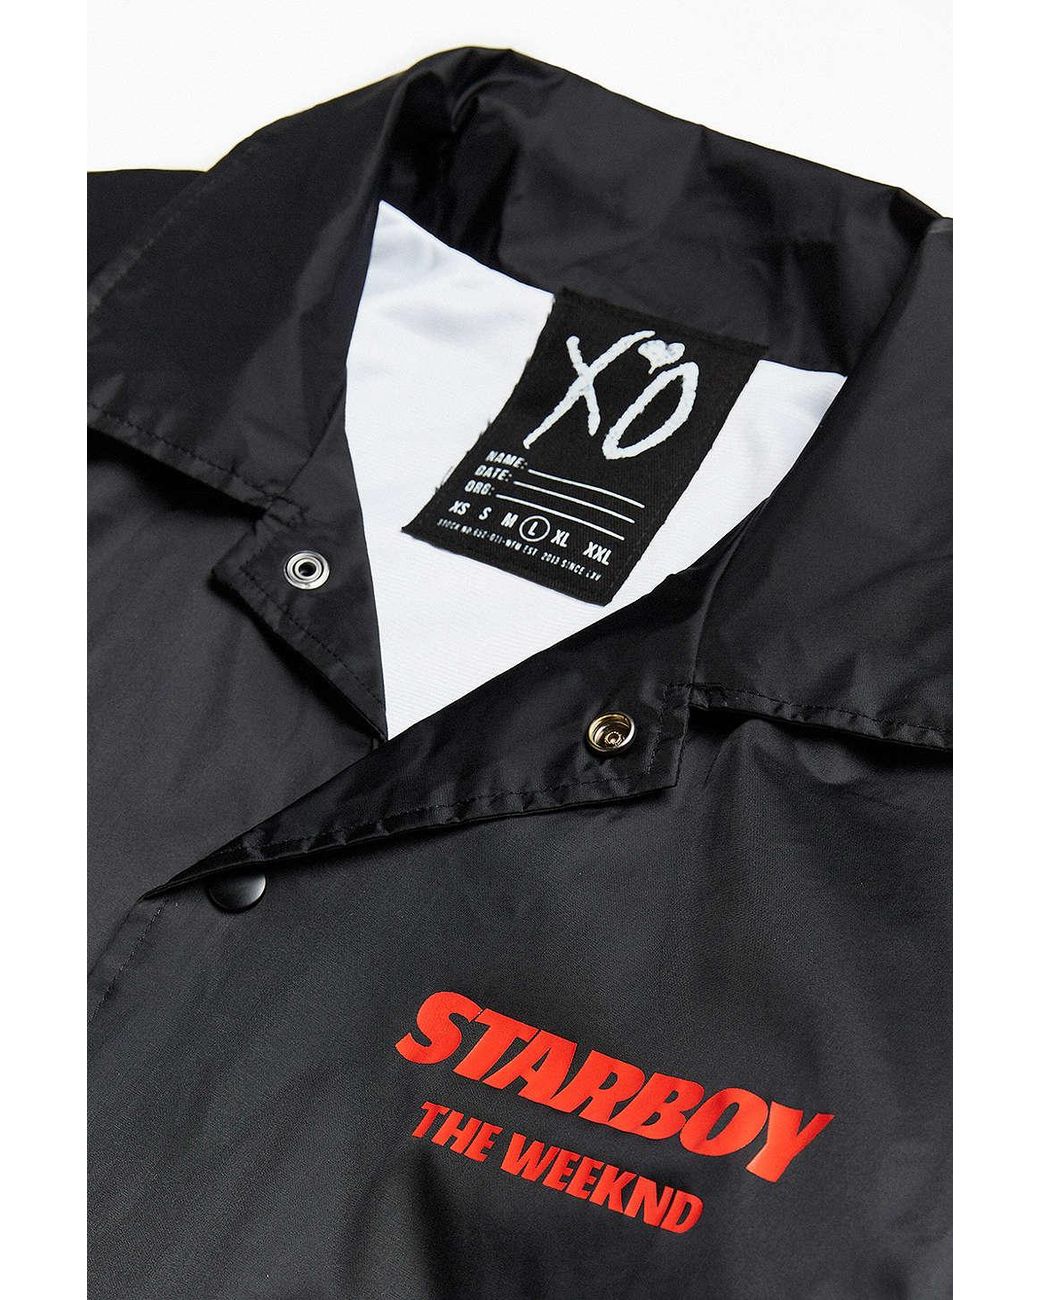 The Weeknd StarBoy Vintage Custom Made Denim Jacket for Sale